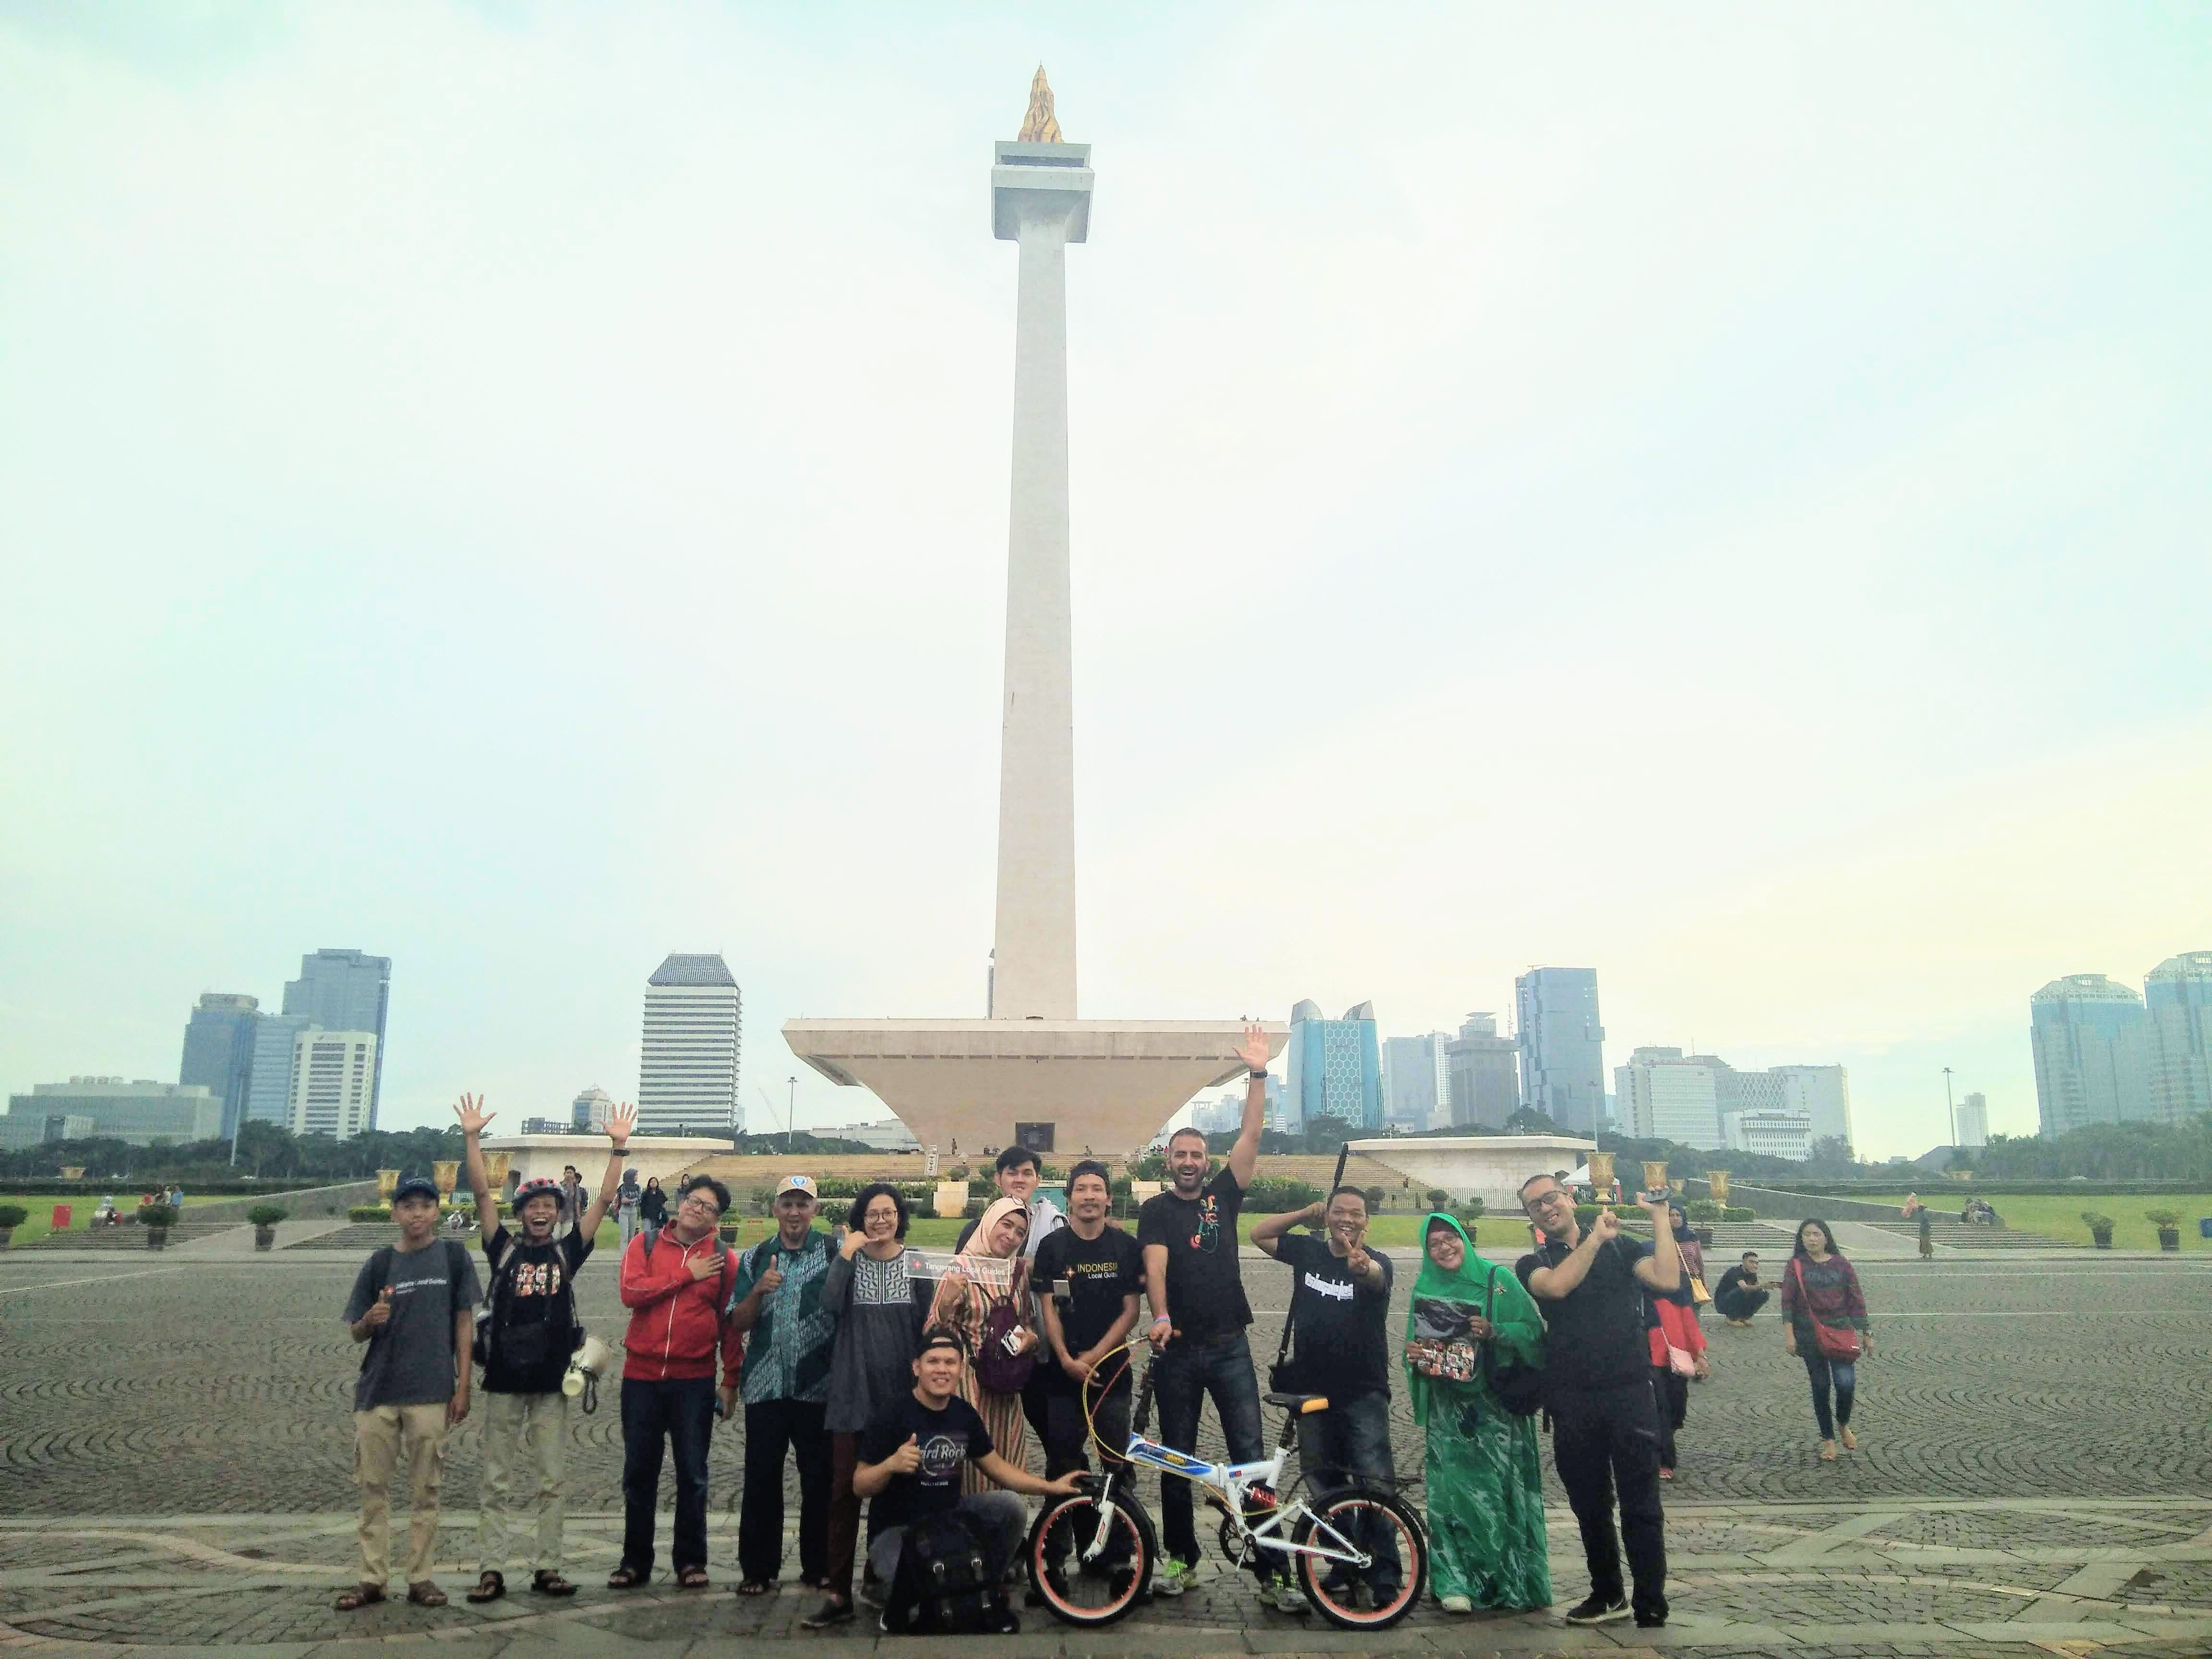 All Local Guides  from Jakarta, Bandung, Tangerang, Bekasi, Depok, Bogor and Jordan @osama at National Monument